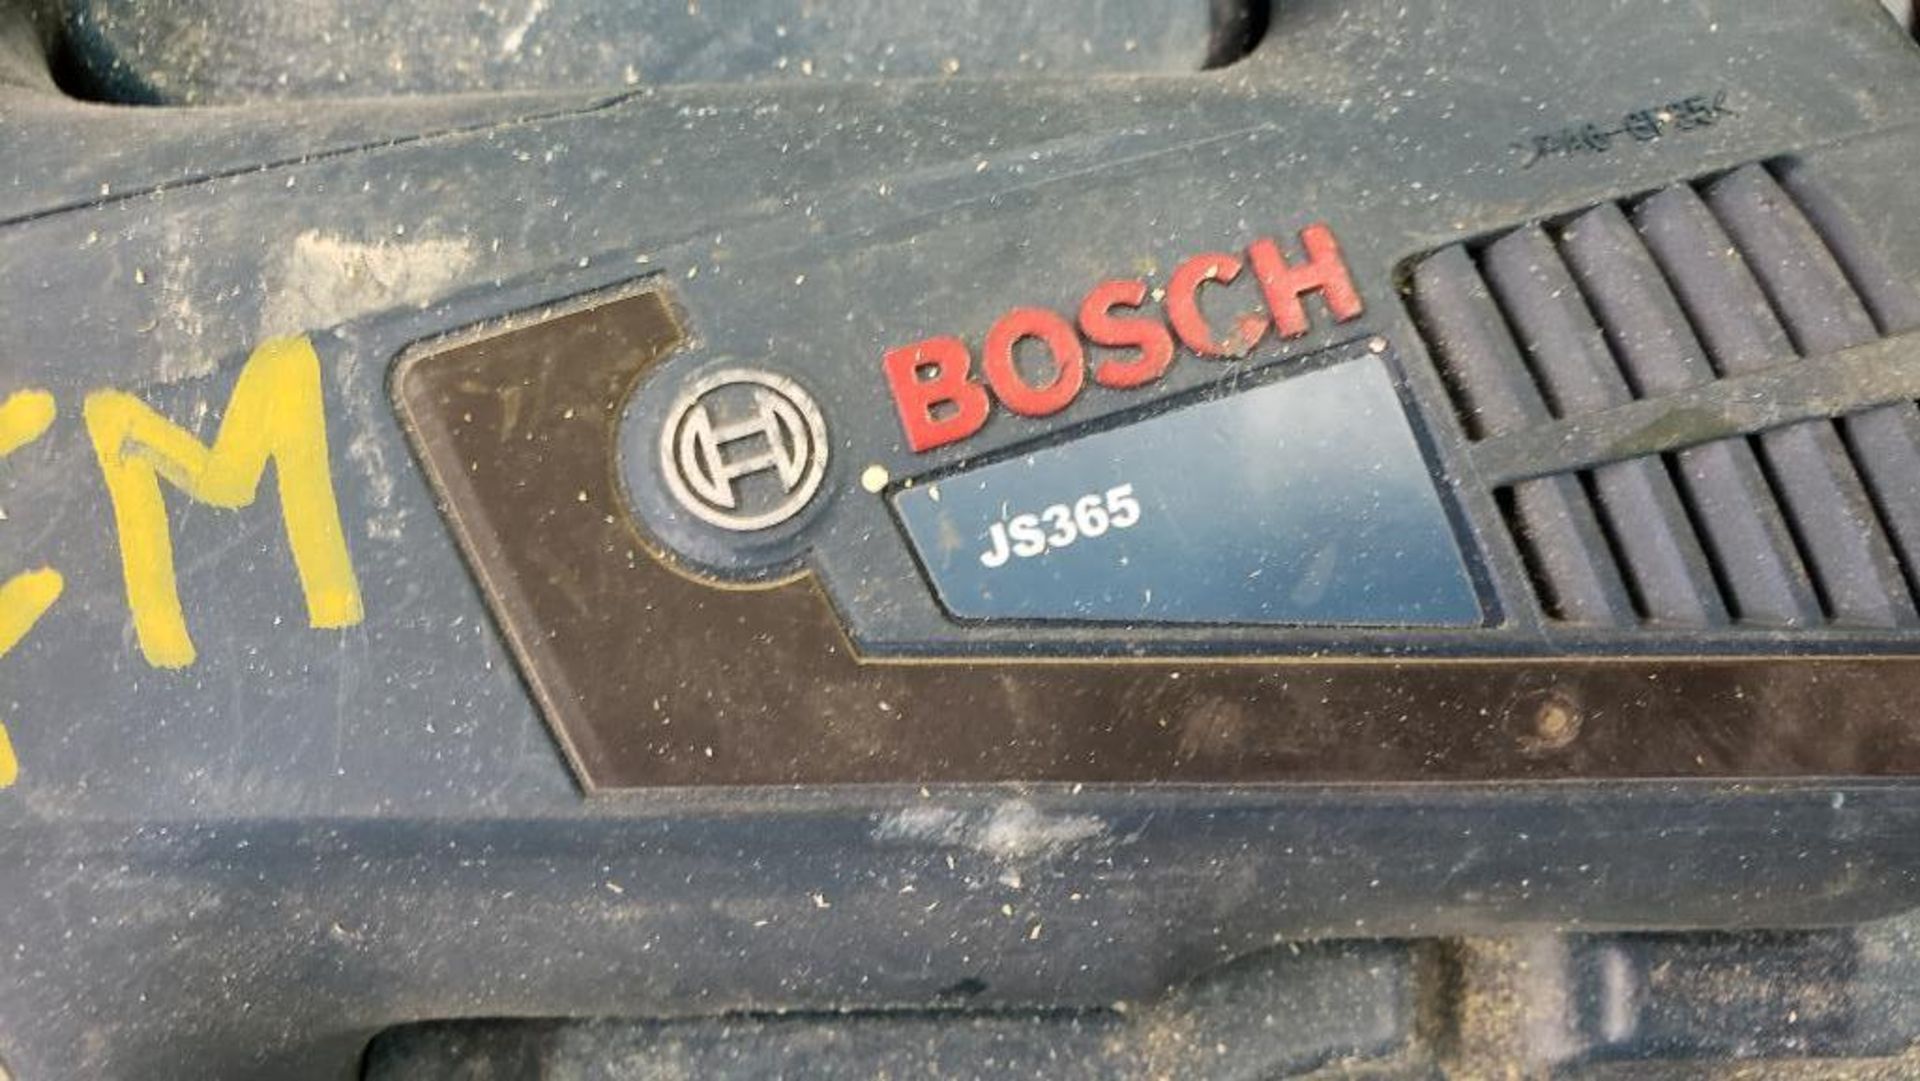 Bosch JS365 Jigsaw. - Image 3 of 4